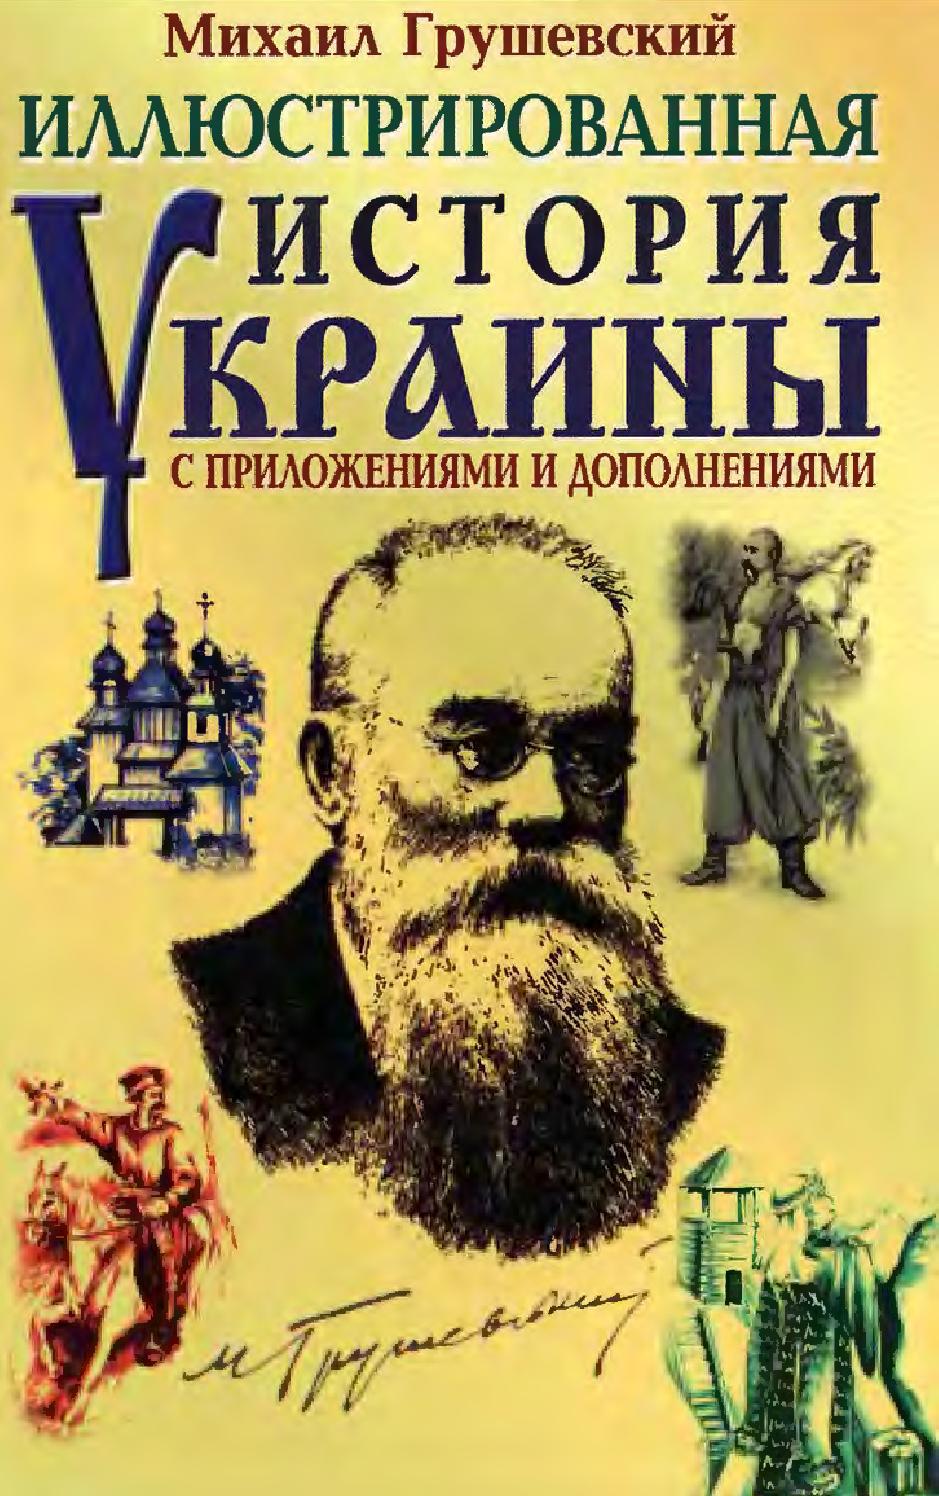 Иллюстрированная история Украины с приложениями и дополнениями. Часть 1, 2004, Михаил Грушевский